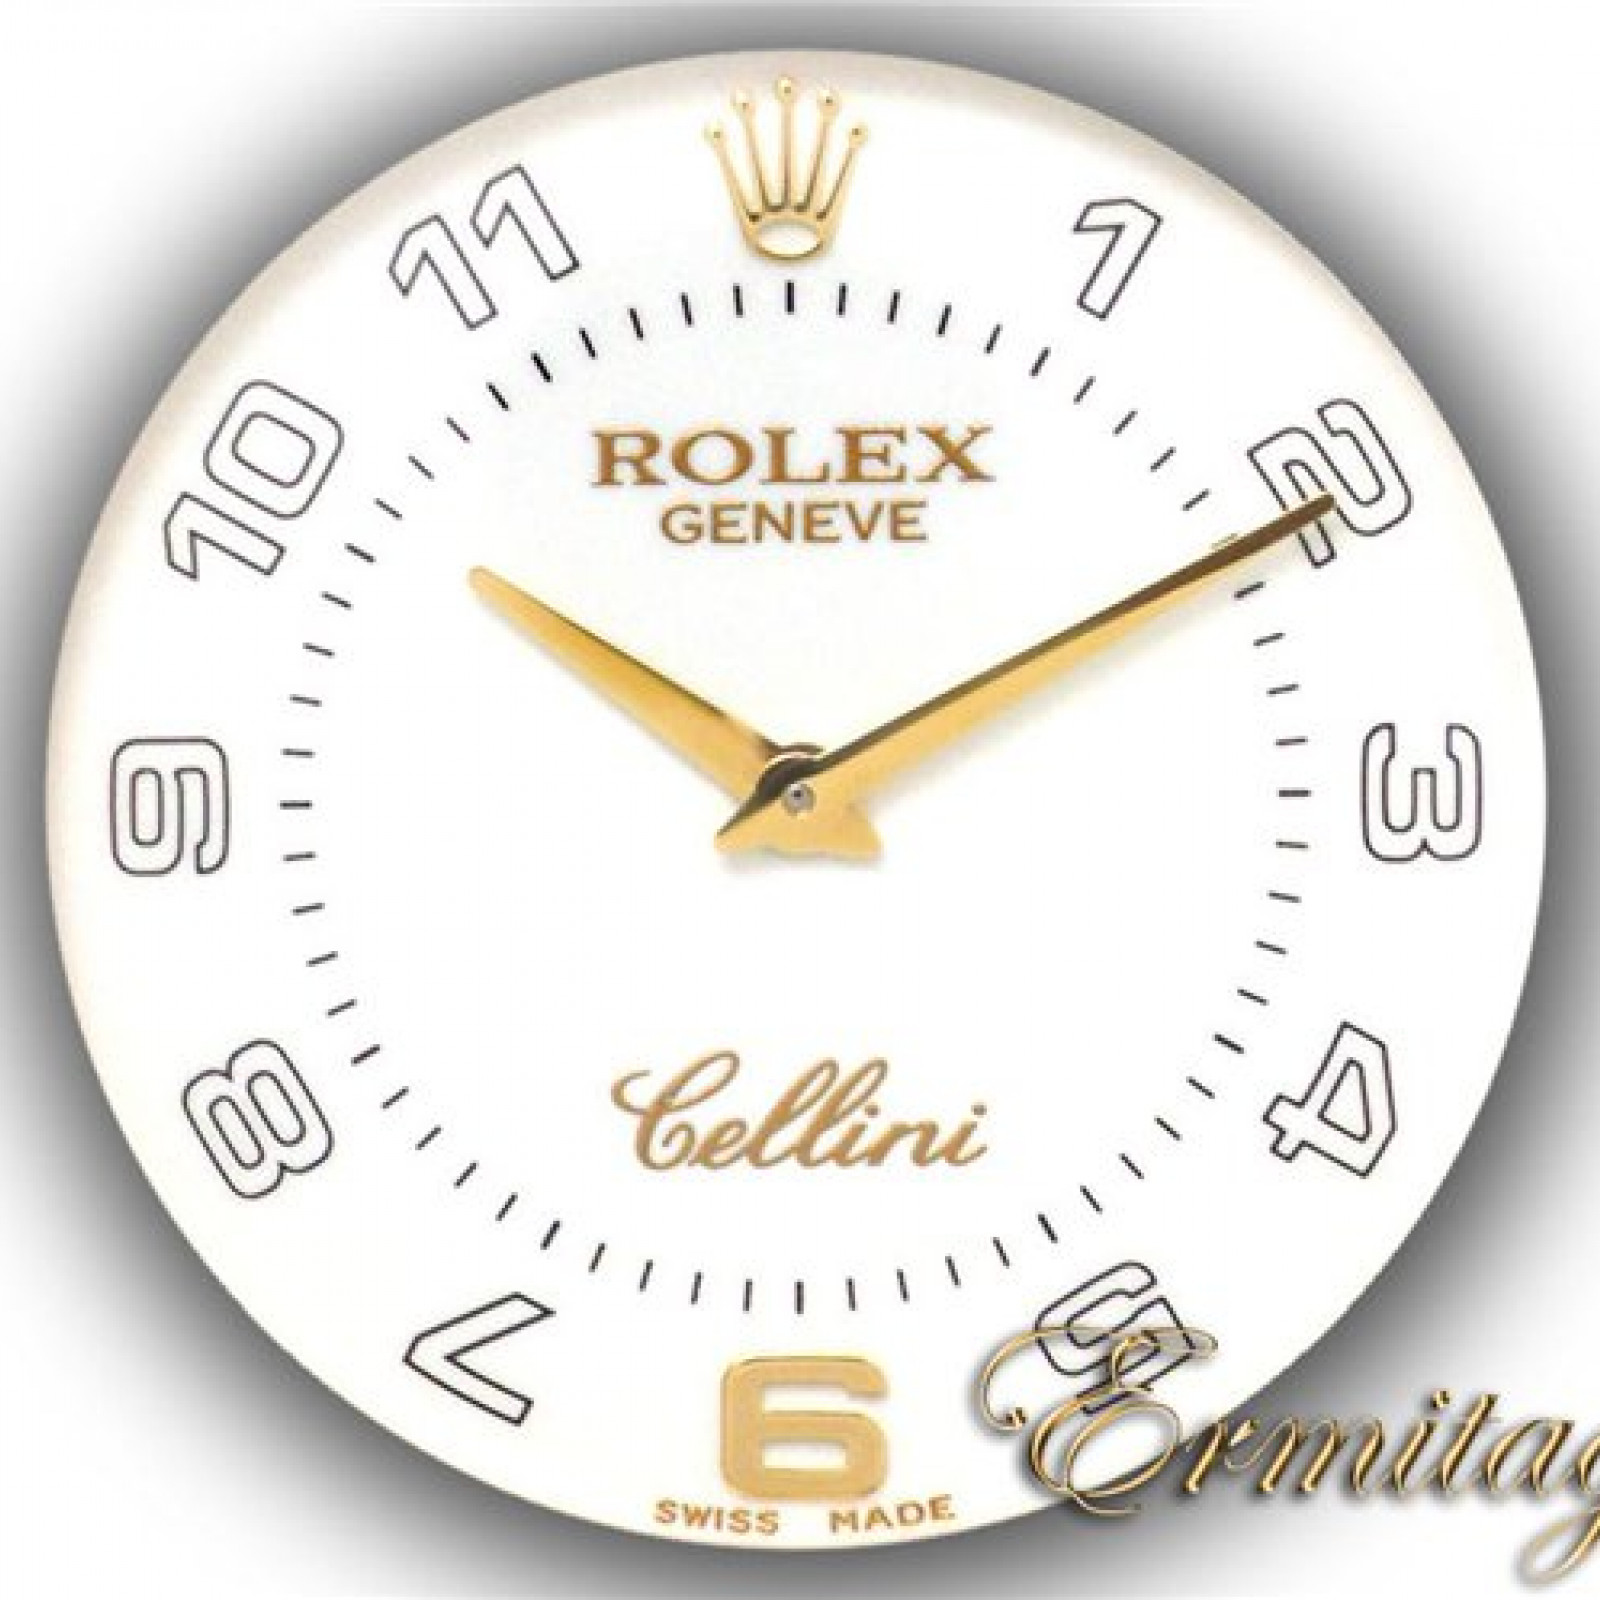 Rolex Cellini Danaos 4233 Gold 2002